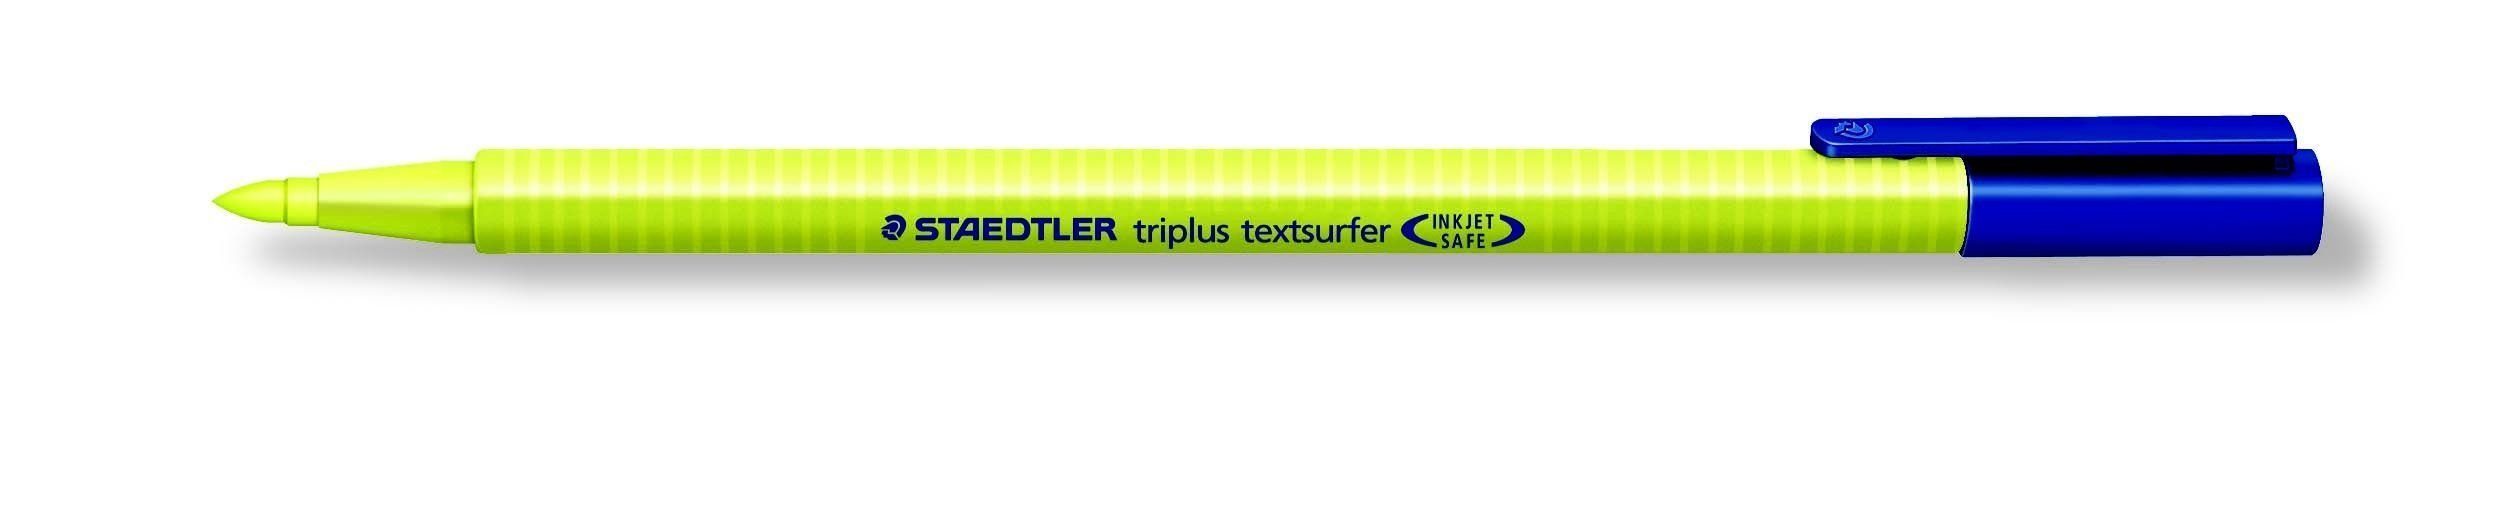 textsurfer triplus STAEDTLER gelb STAEDTLER Kugelschreiber Textmarker